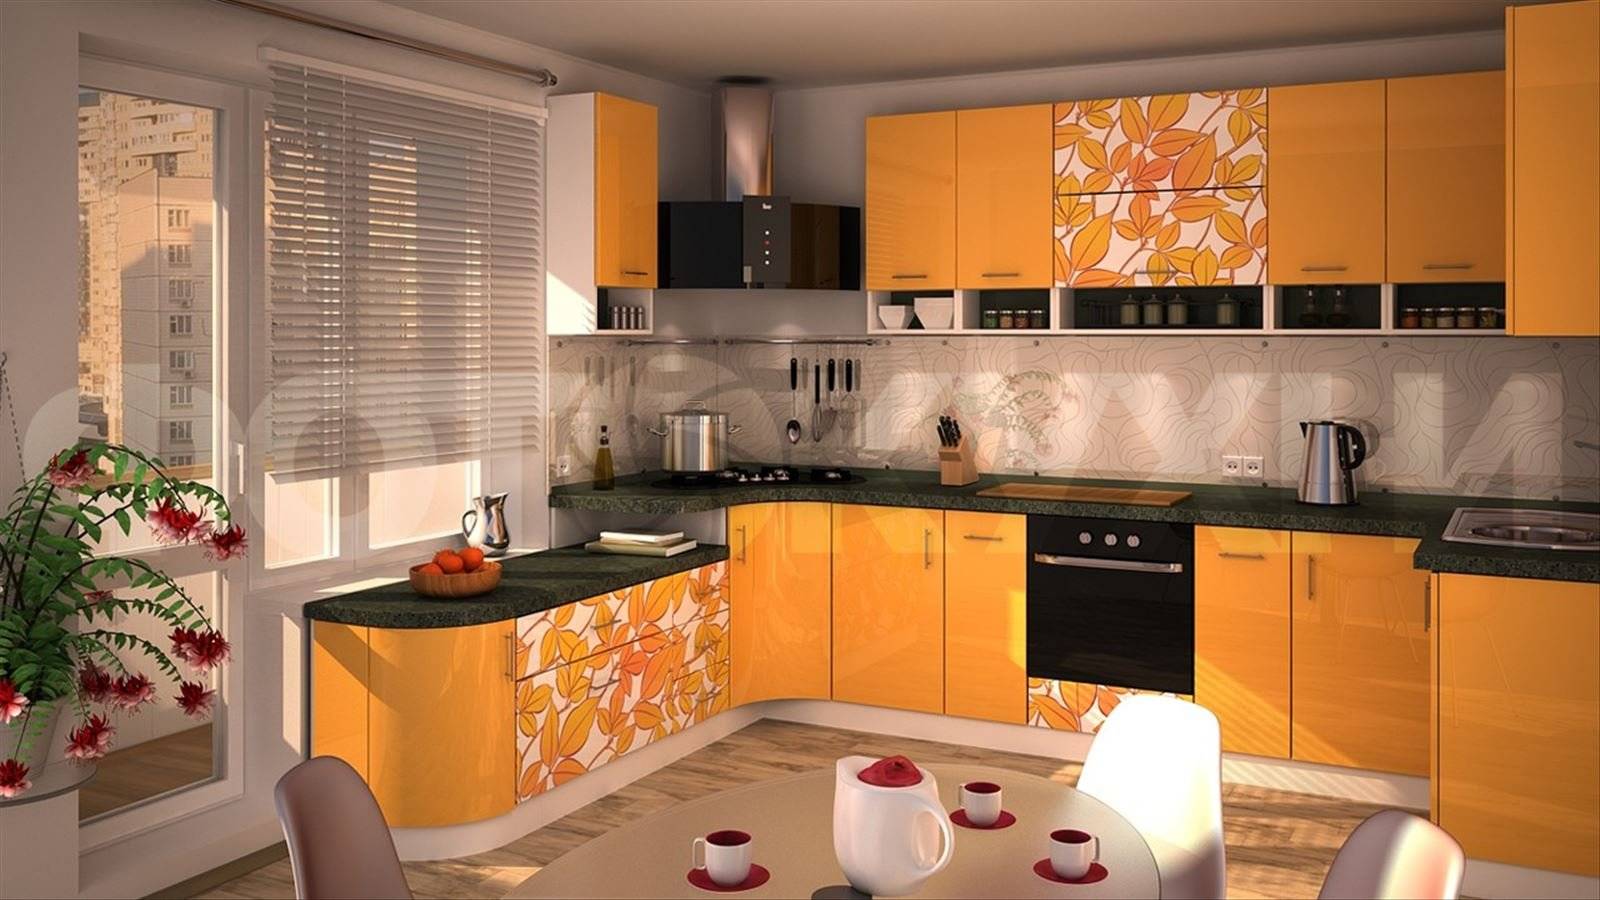 Оранжевая кухня в интерьере (58 фото): стены в желто-, черно-, зелено-оранжевом цвете, какие шторы подойдут, видео